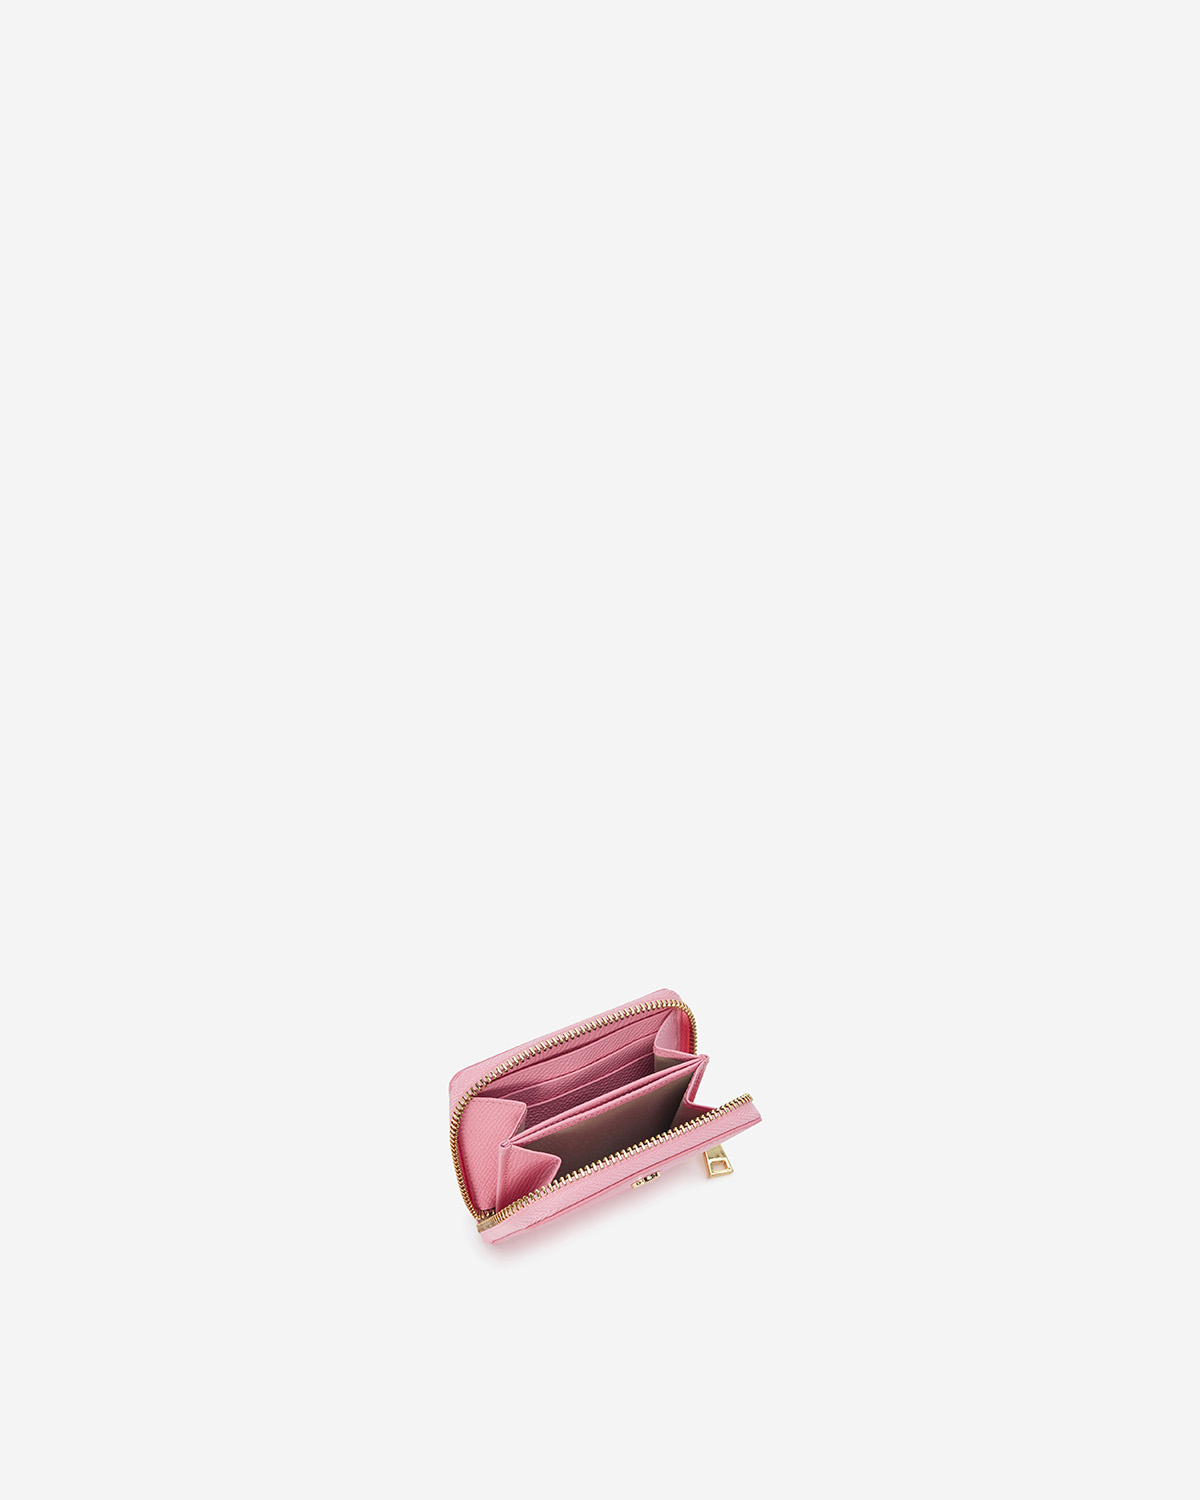 VERA Emily Zipped Wallet in Creative Pink กระเป๋าสตางค์หนังแท้ ทรงสั้น ซิปรอบ สีชมพู